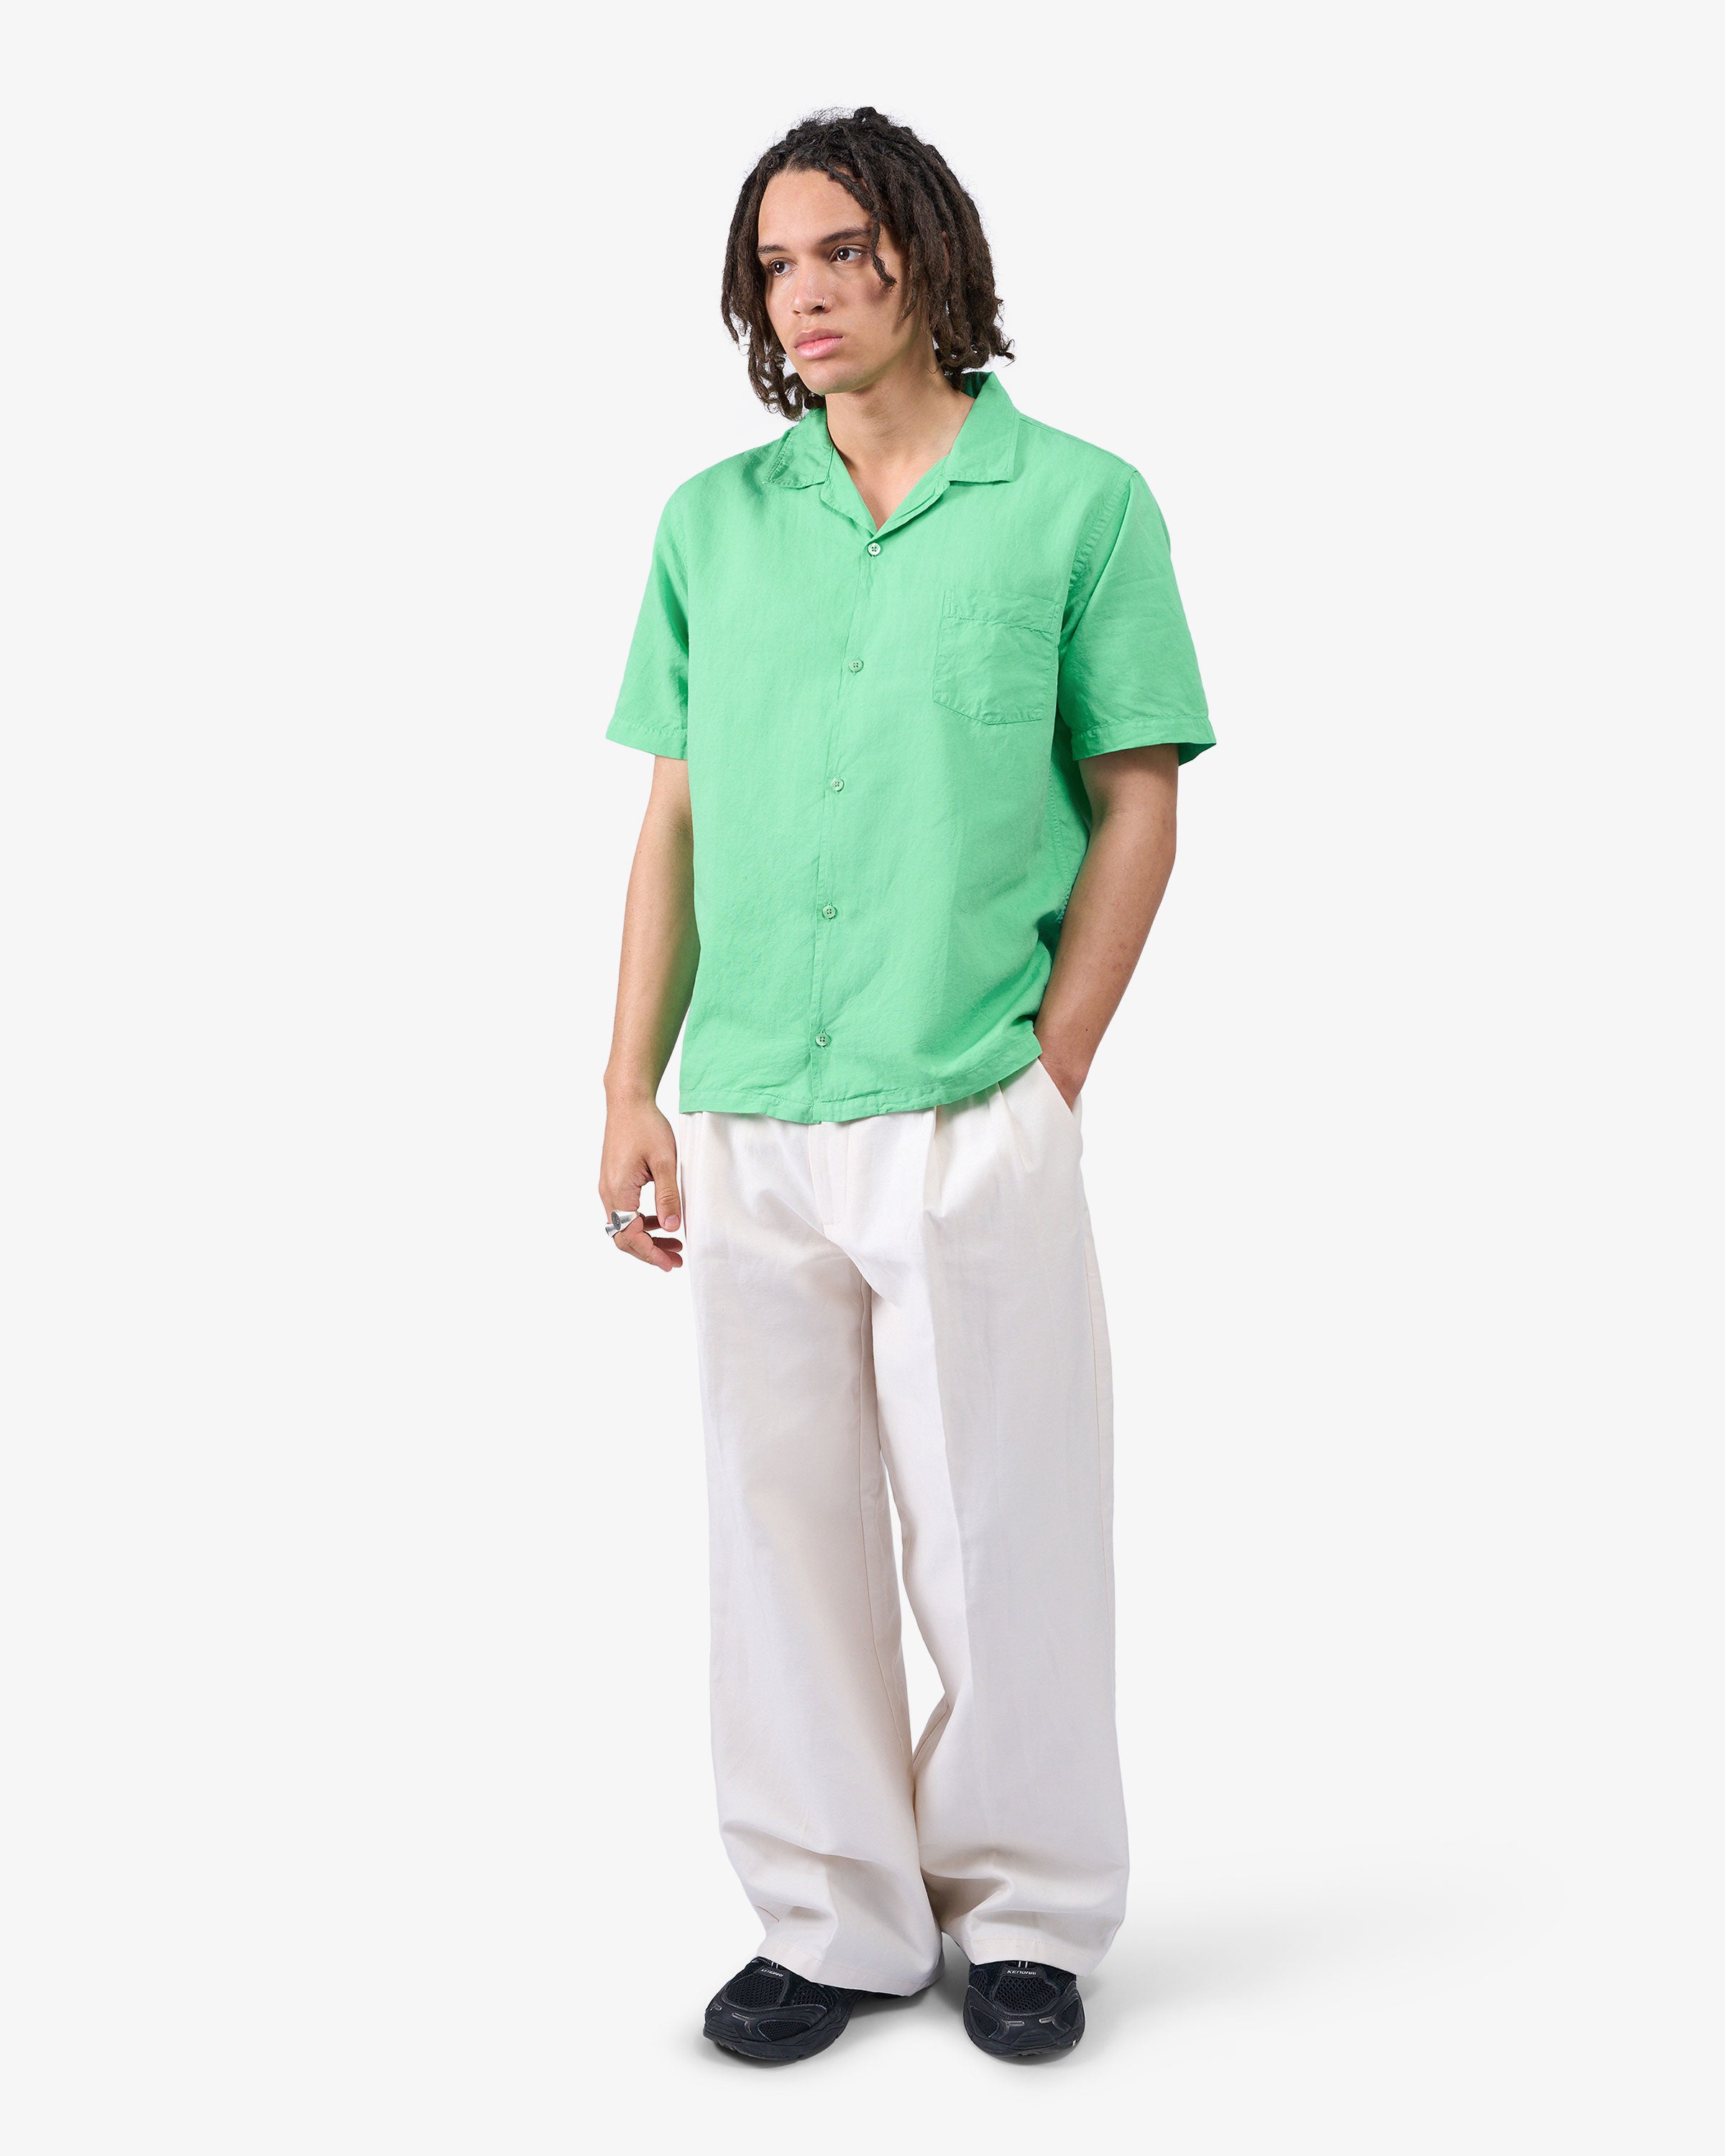 Linen Short Sleeved Shirt - Ivory White